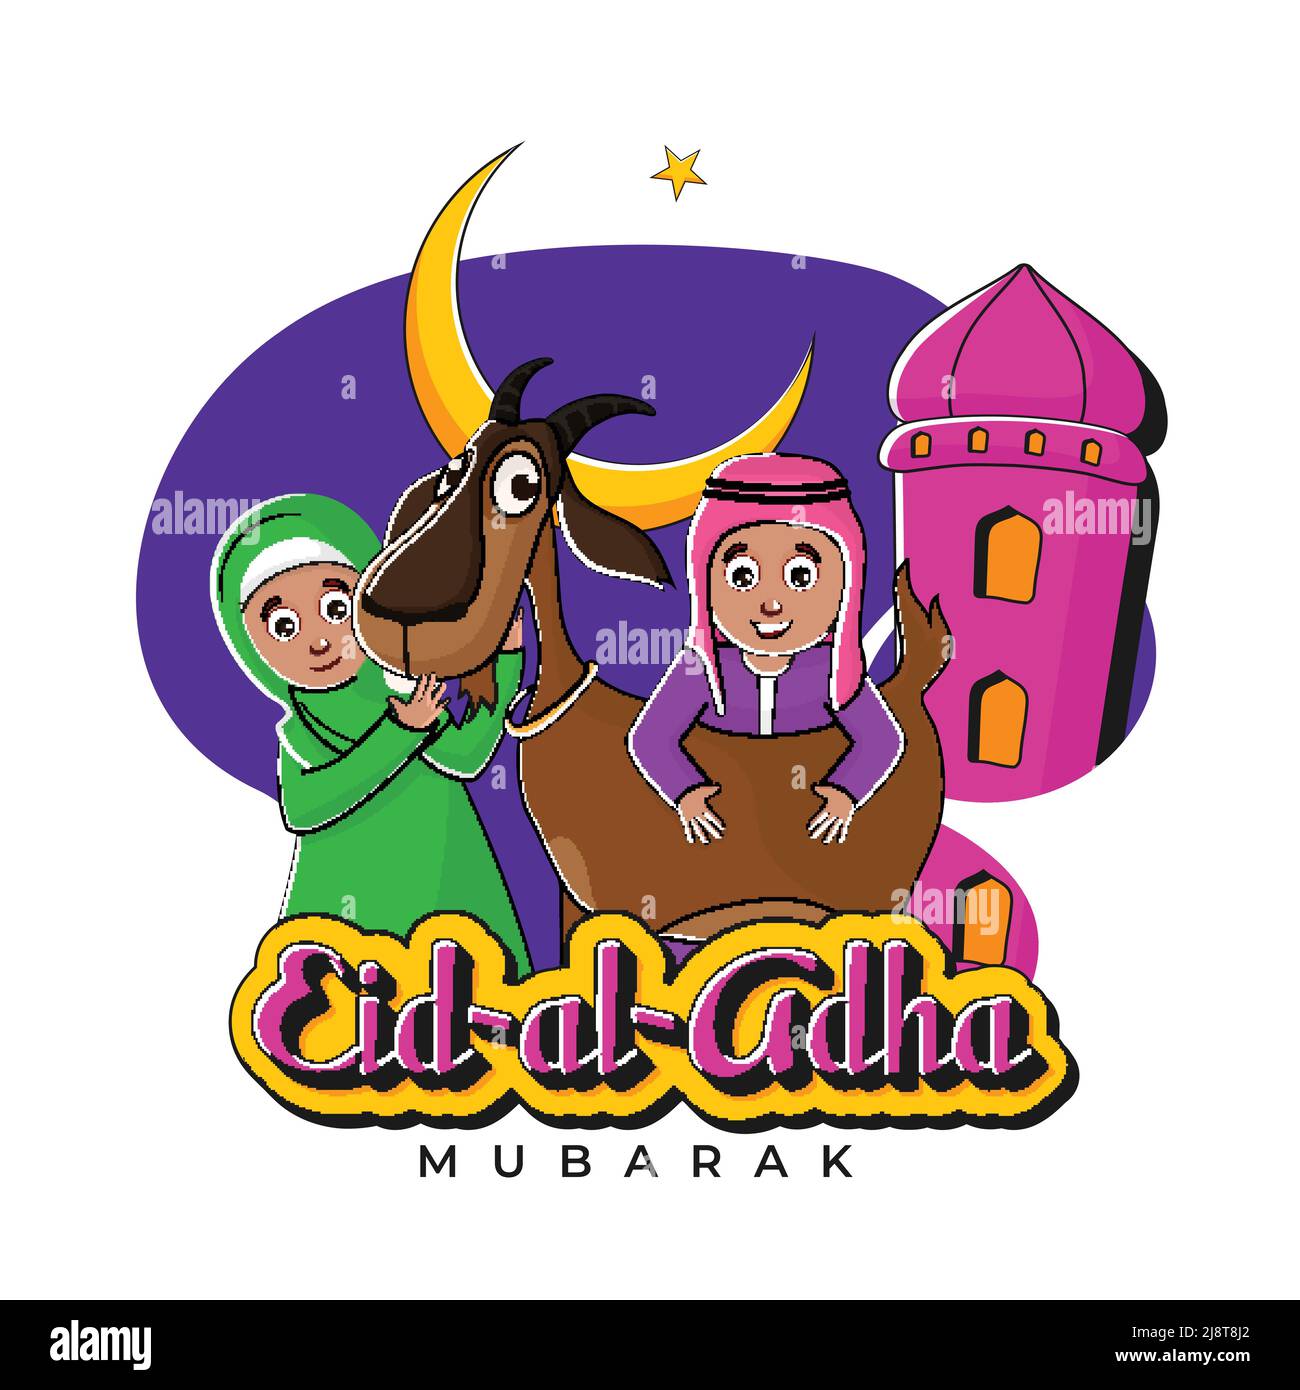 Sticker Style Eid UL Adha Mubarak Font con Islamic Kids Holding Cartoon Goat, Crescent Moon, Star, Mosque Minareto su sfondo viola e bianco. Illustrazione Vettoriale